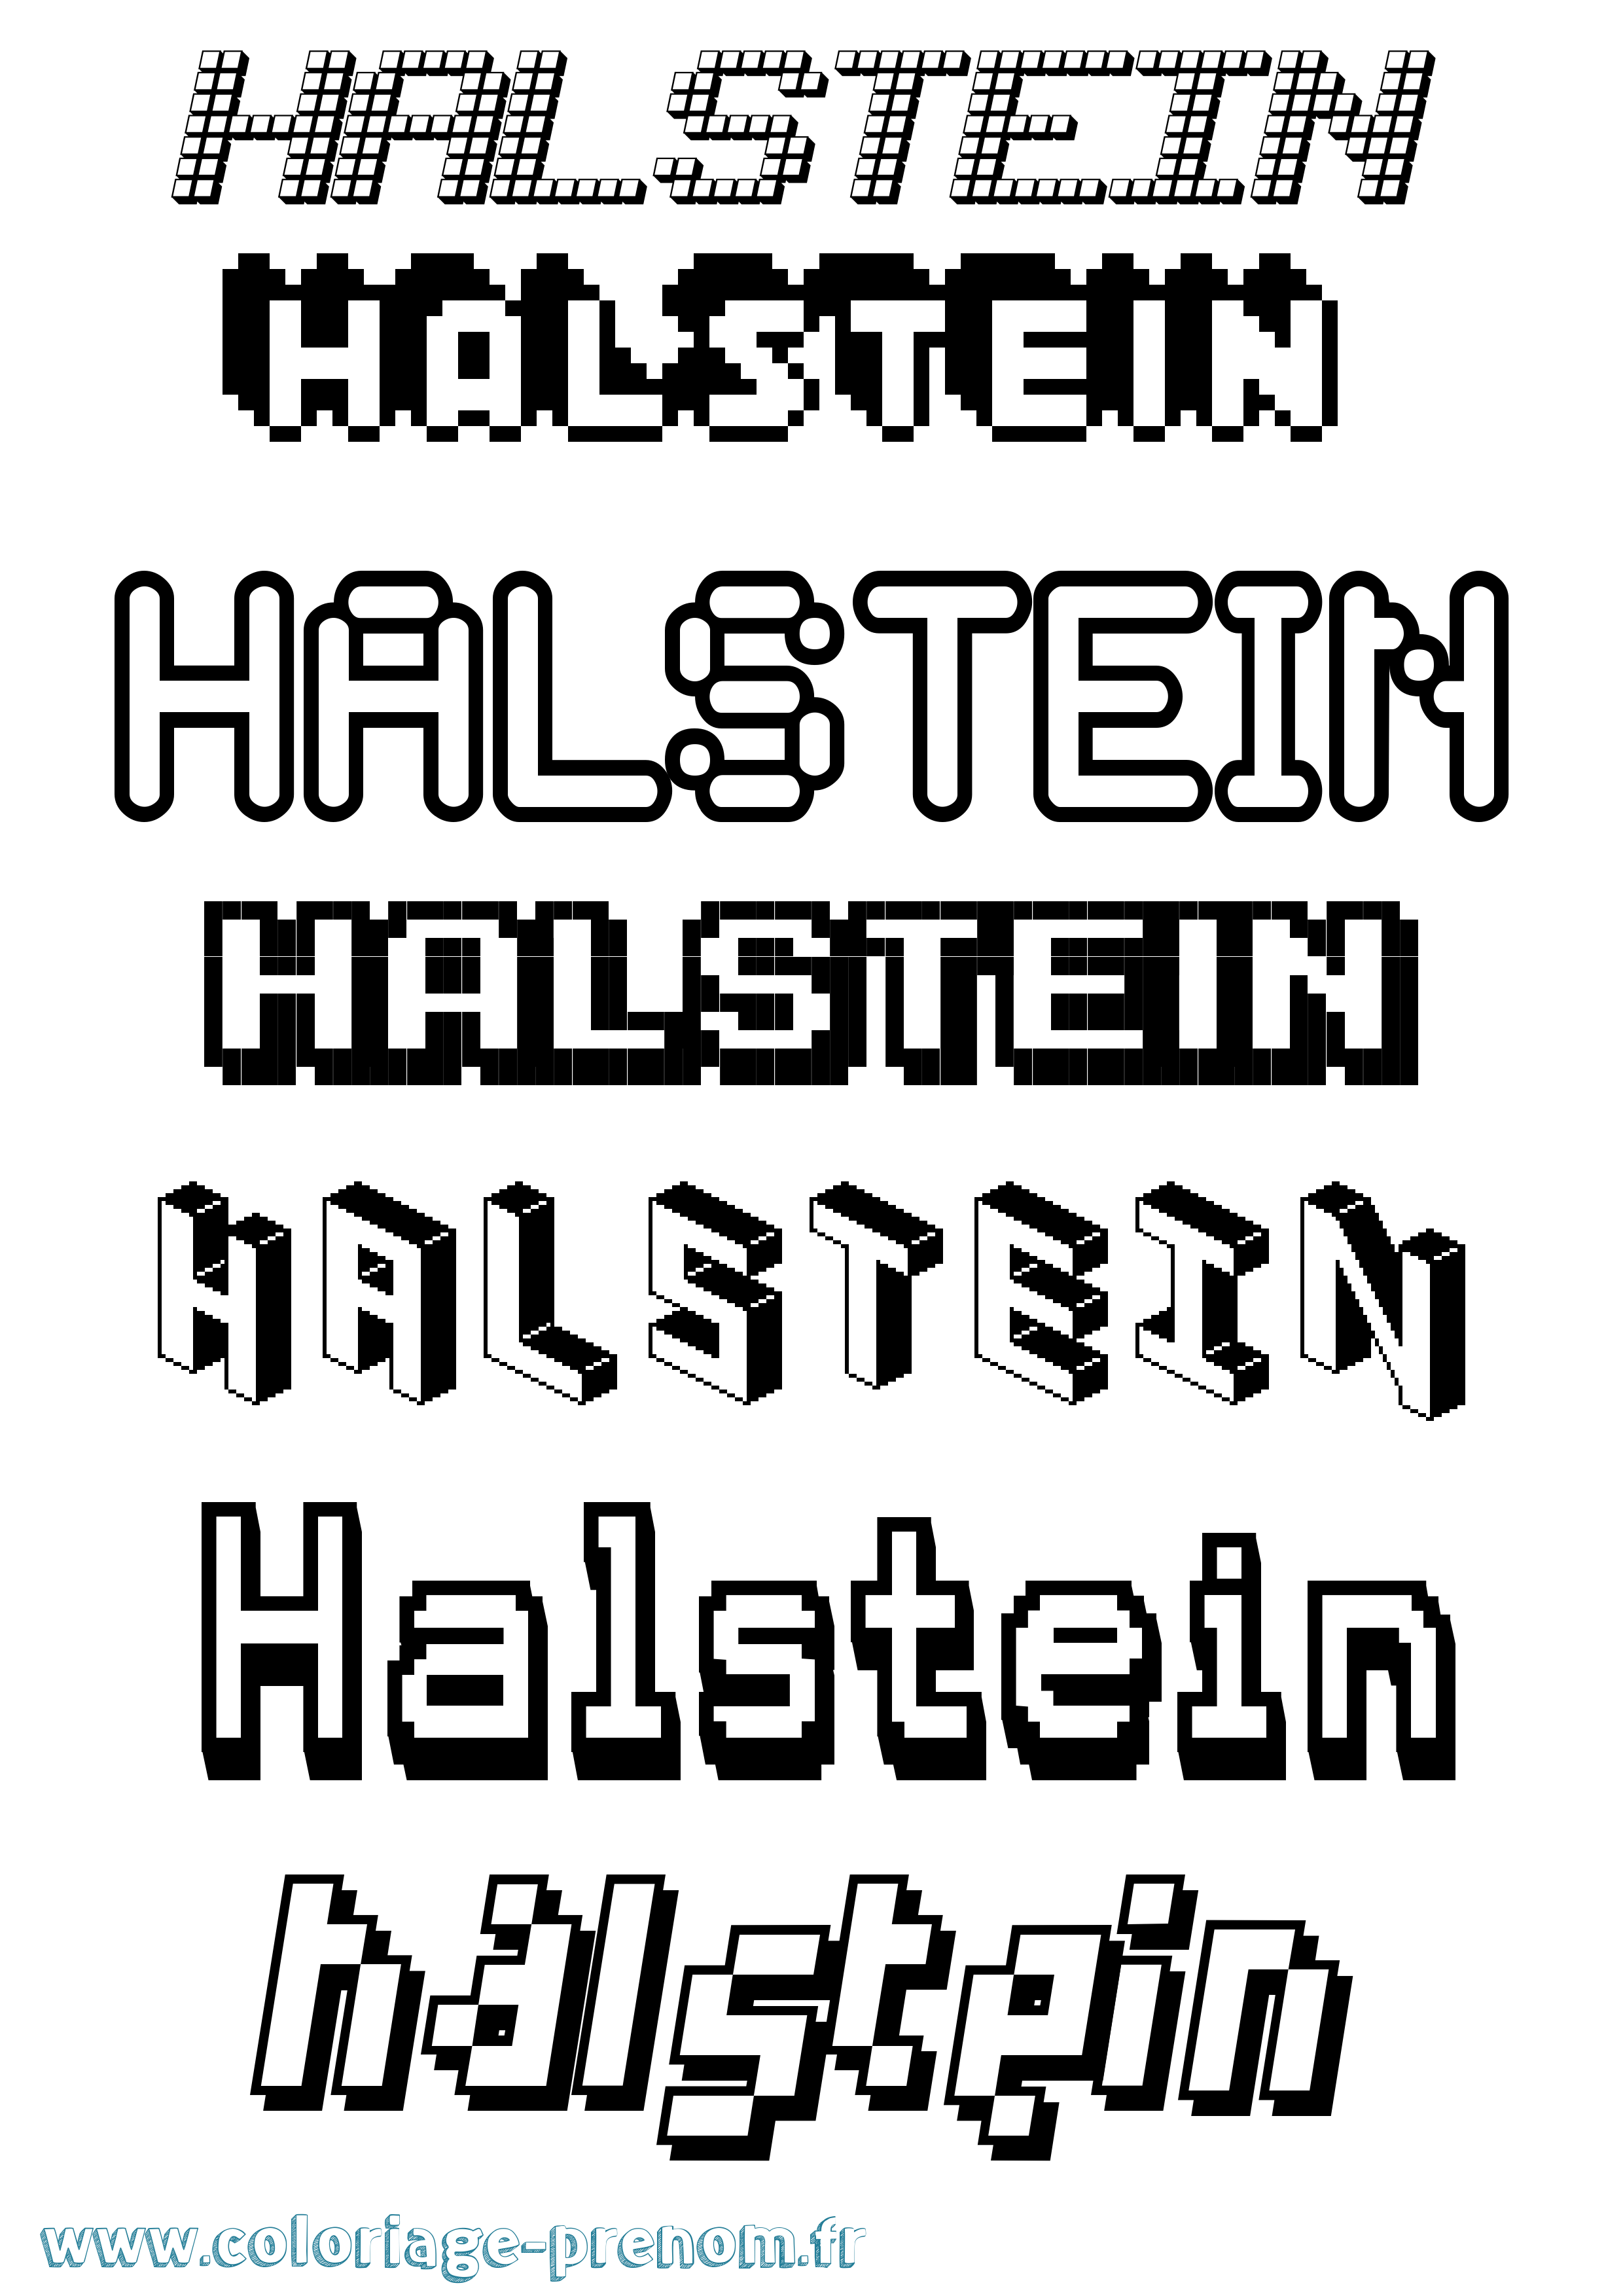 Coloriage prénom Halstein Pixel